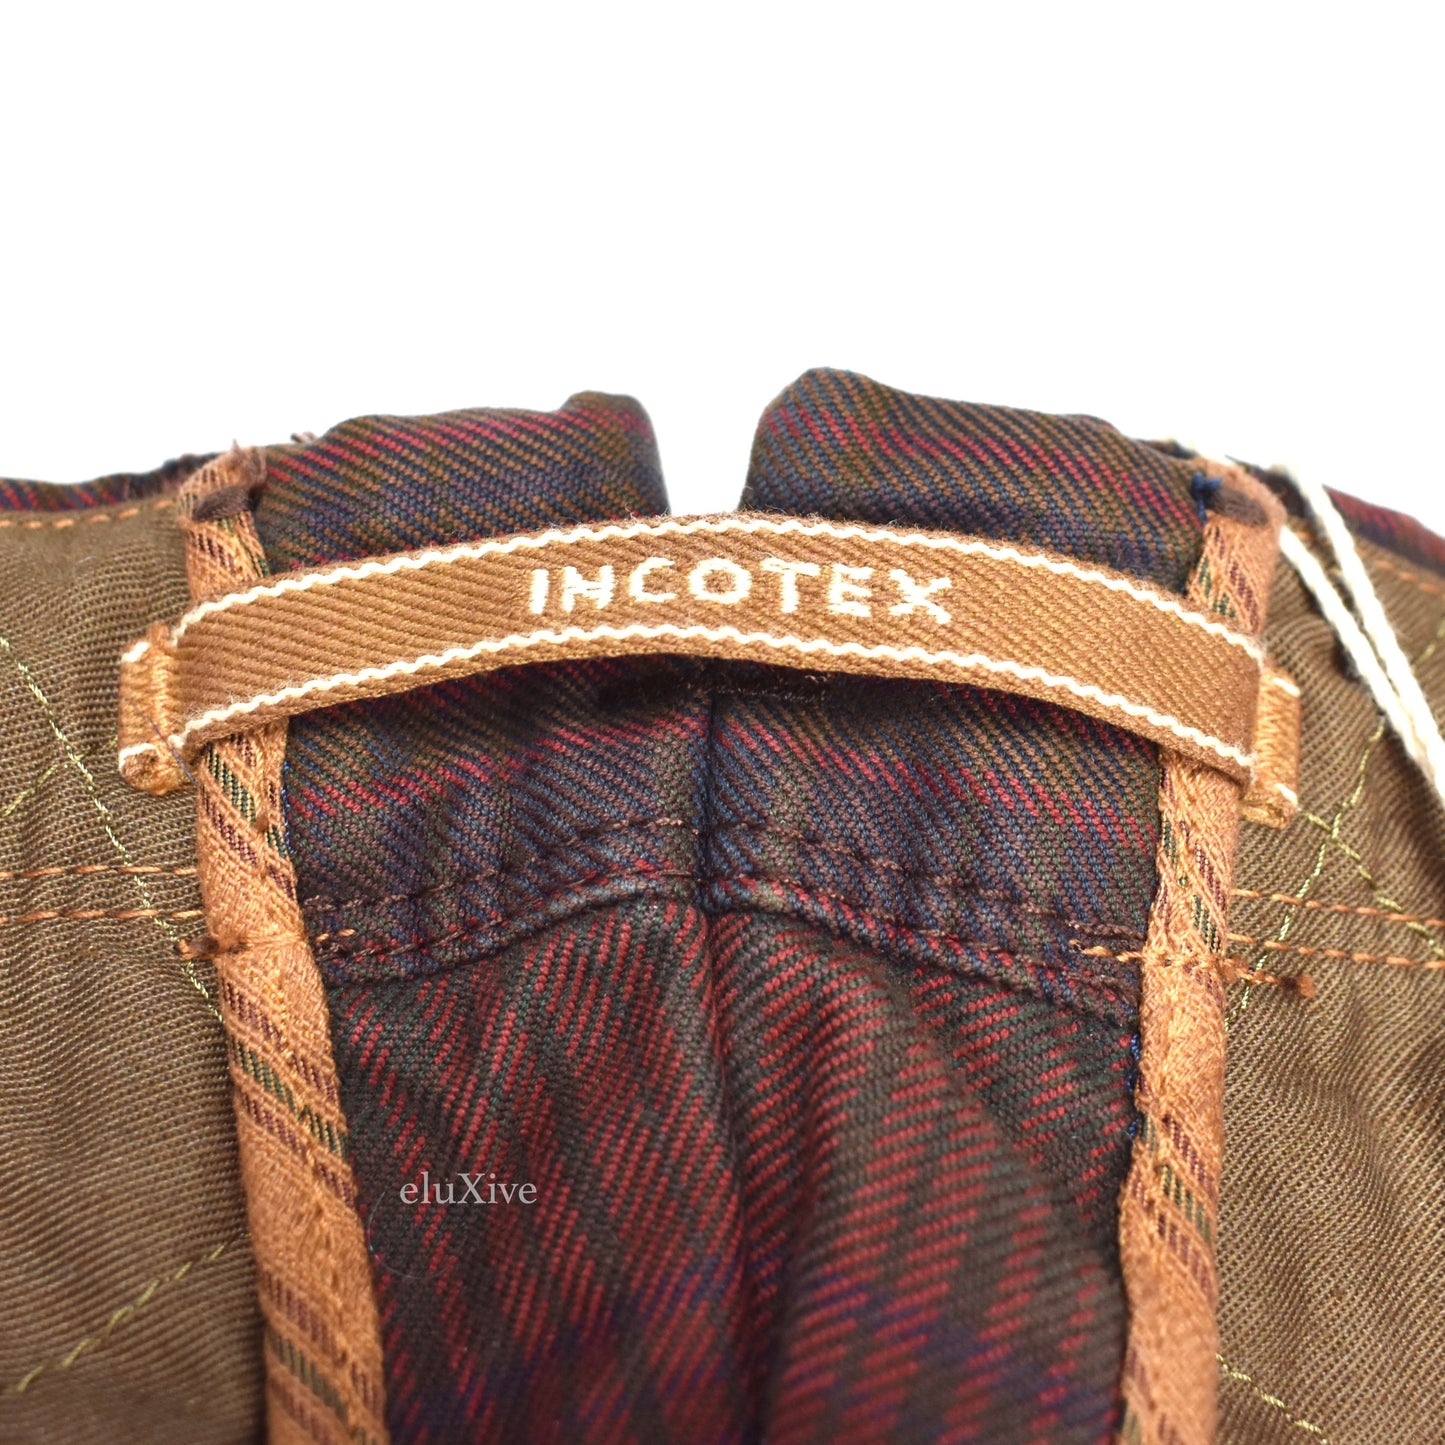 Incotex - 50's Edition Plaid Stripe Cotton Pants